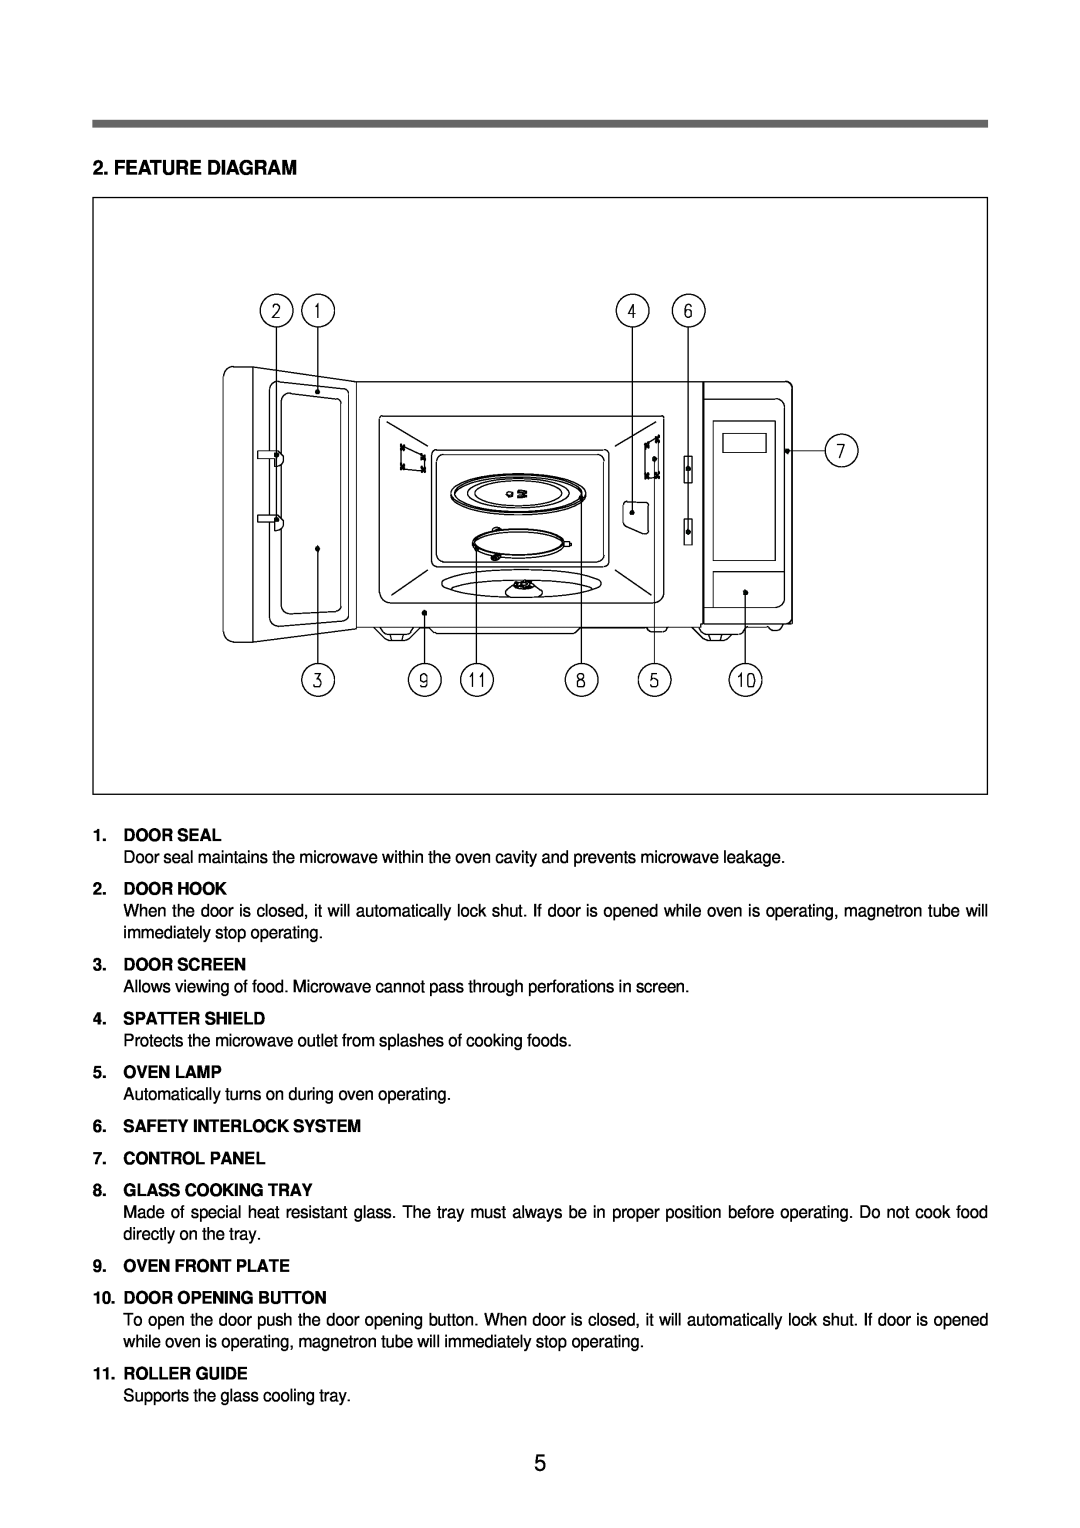 Daewoo KOR-63DB9S, KOR-63FB0S Feature Diagram, Door Seal, Door Hook, Door Screen, Spatter Shield, Oven Lamp, Roller Guide 